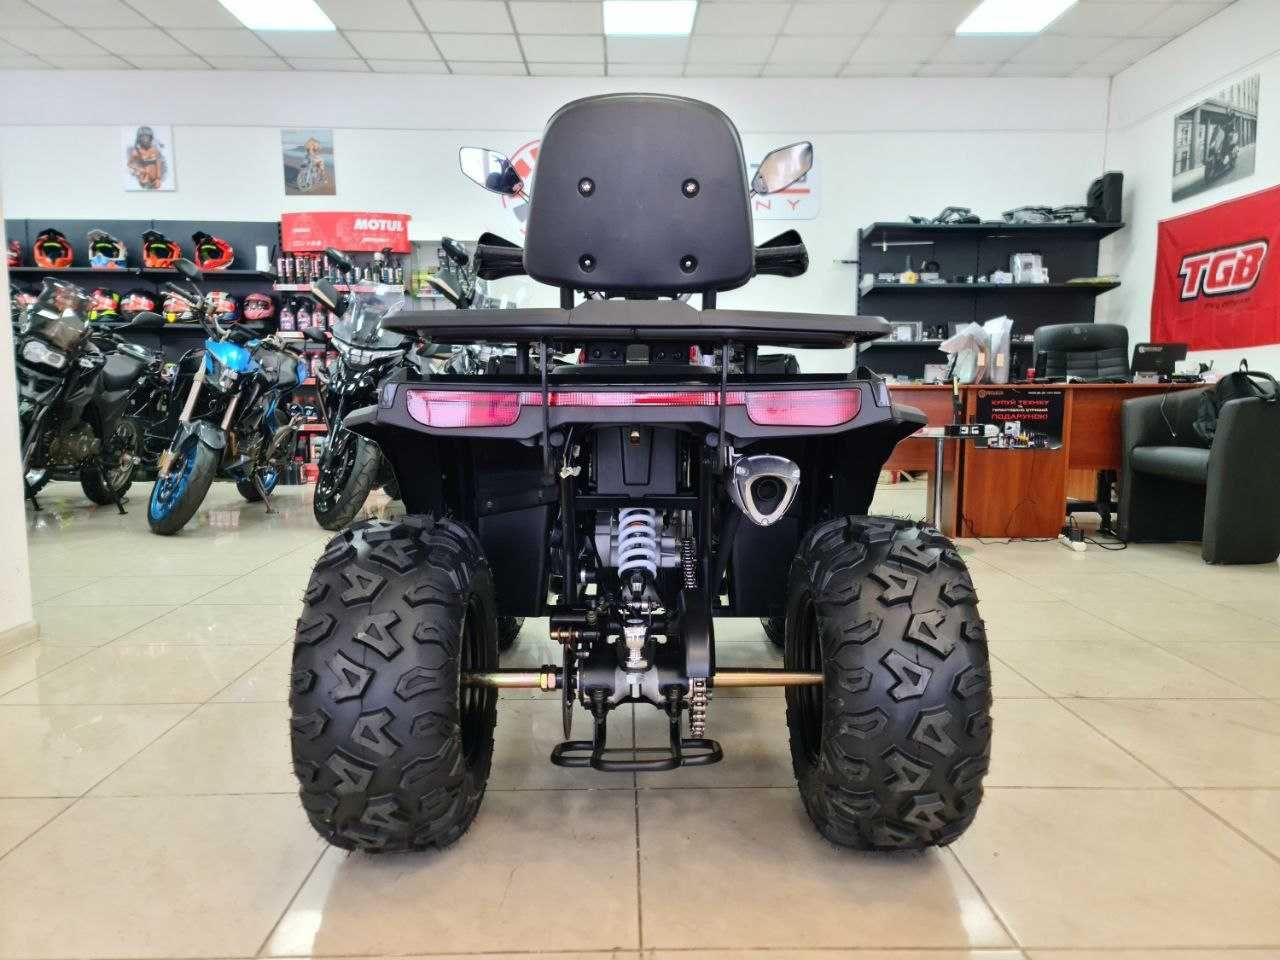 Купить квадроцикл Forte ATV 200 G в мотосалоне Артмото